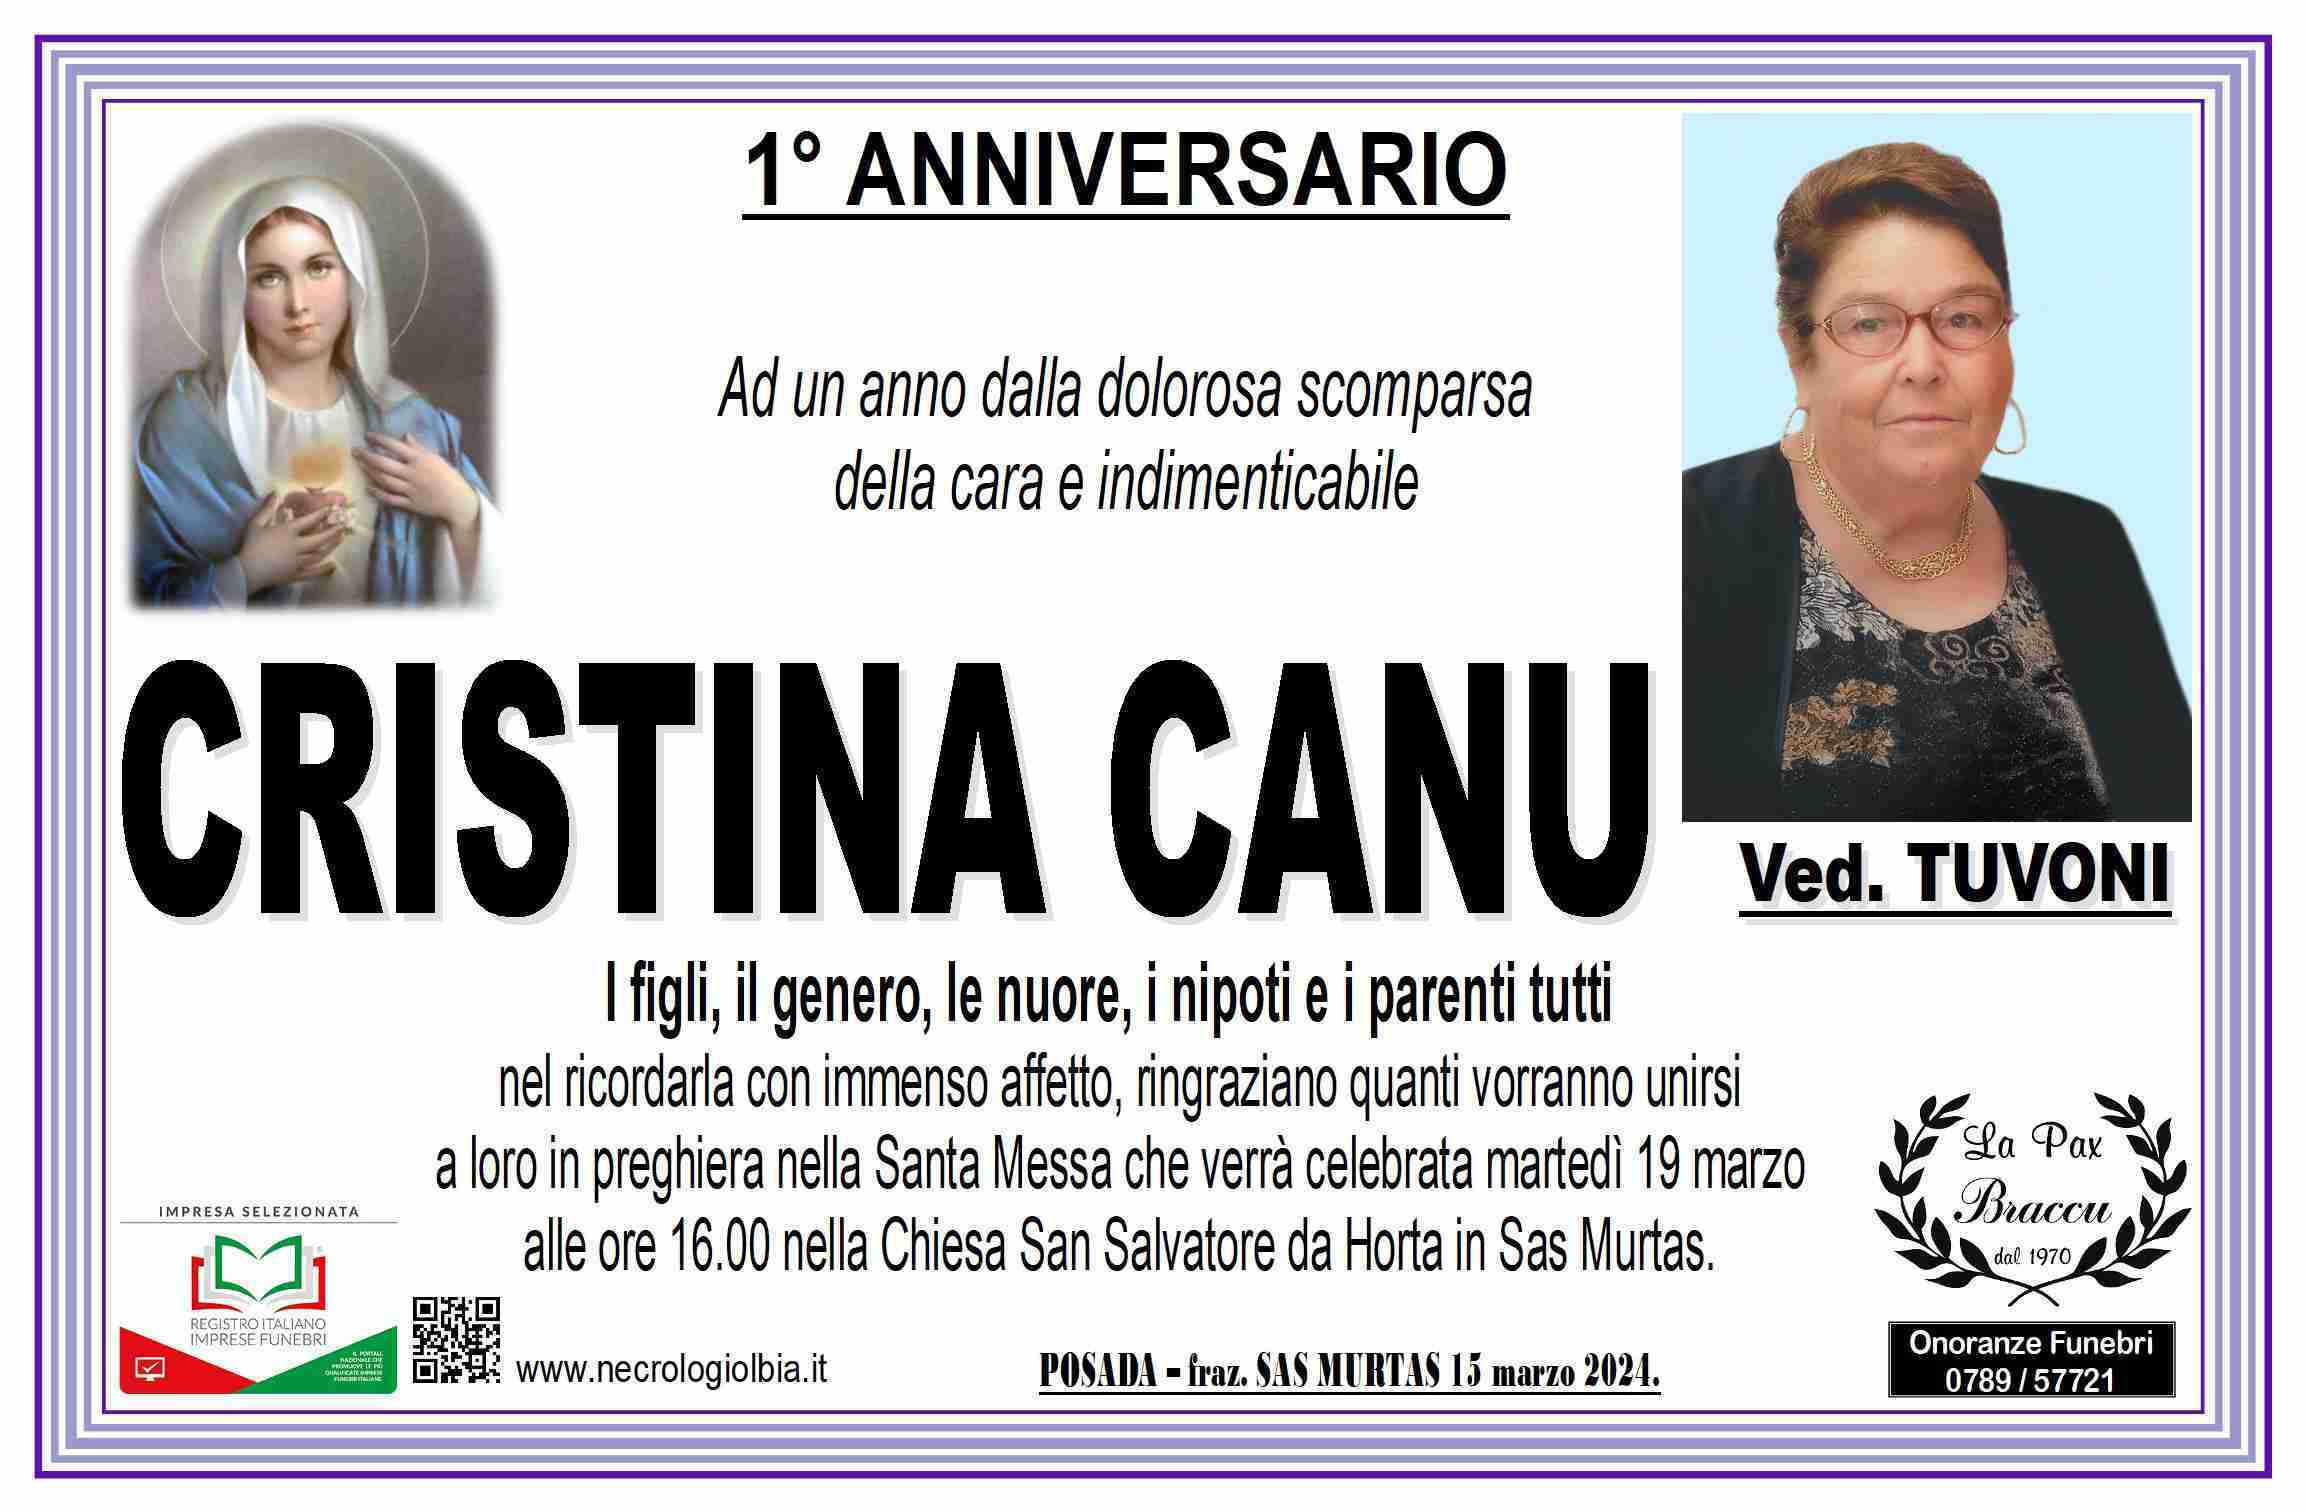 Cristina Canu